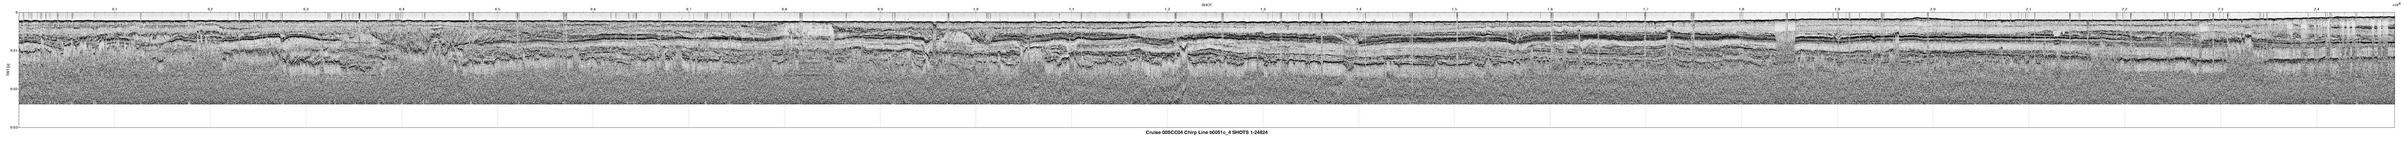 00SCC04 b0051c_4 seismic profile image